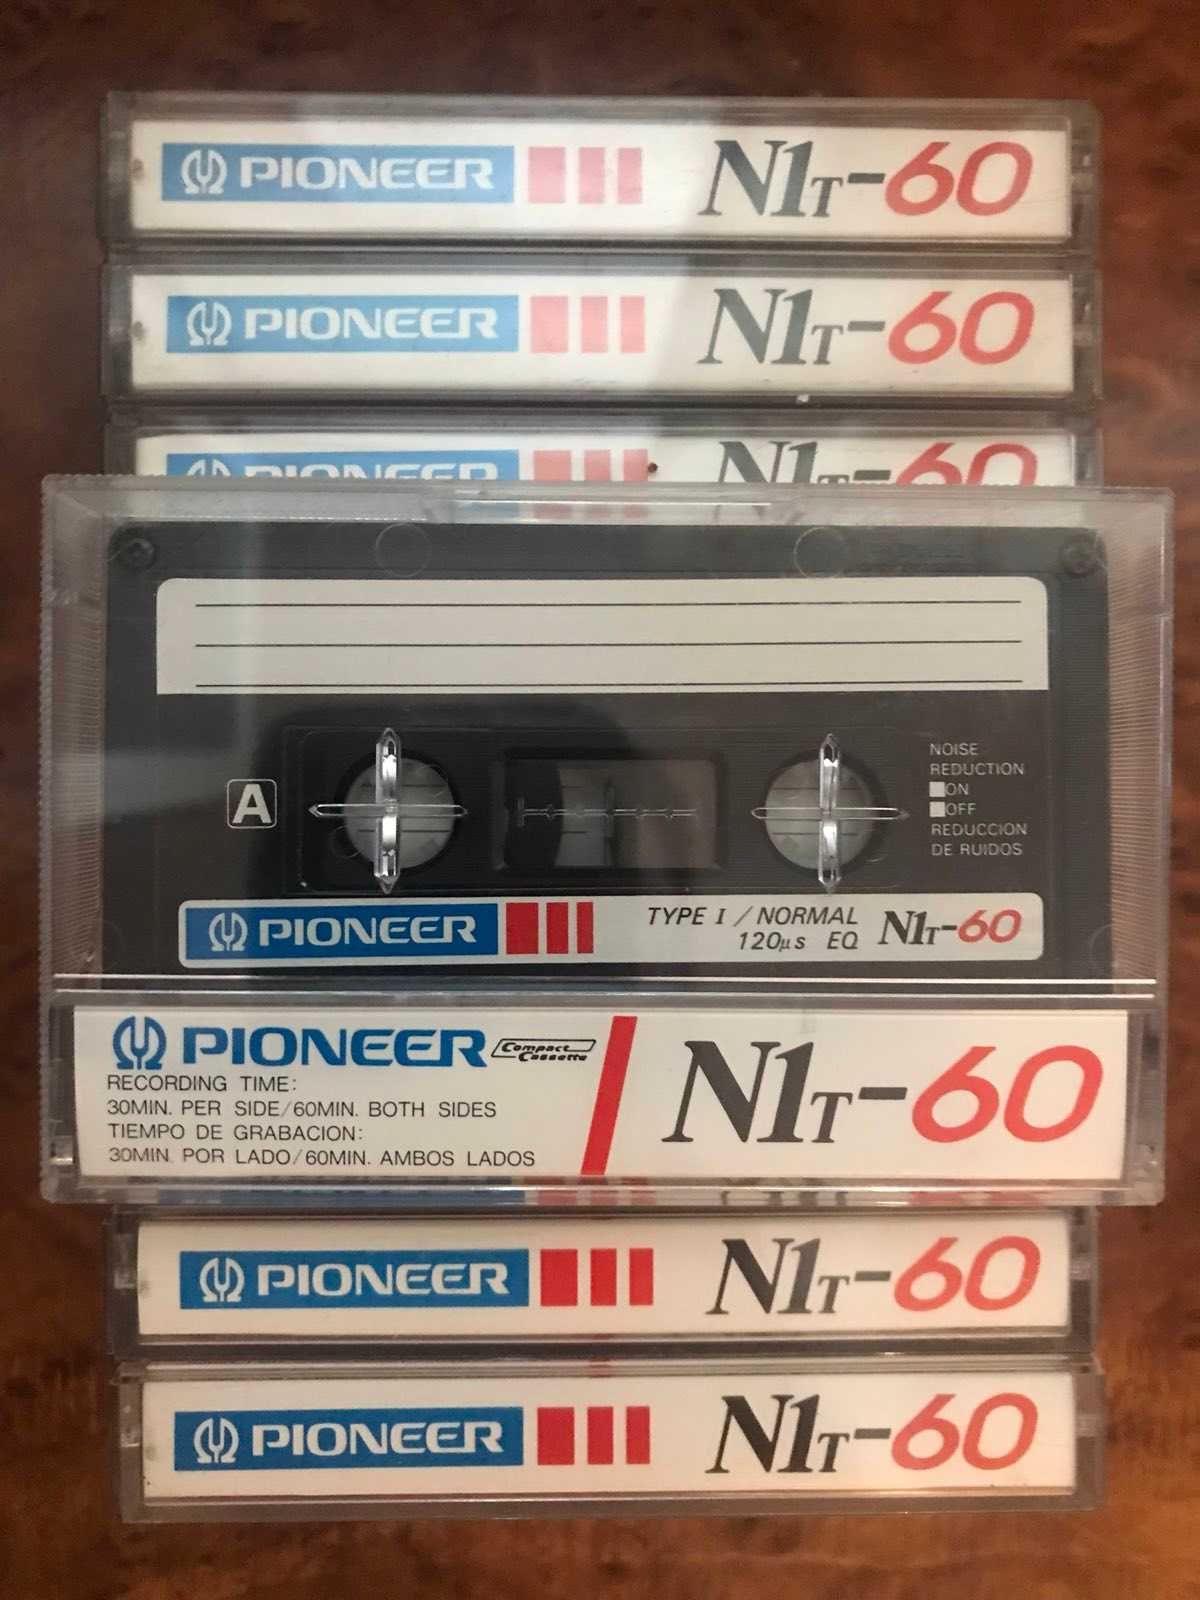 Продам редкую коллекционную аудио кассету Pioneer N1t-60